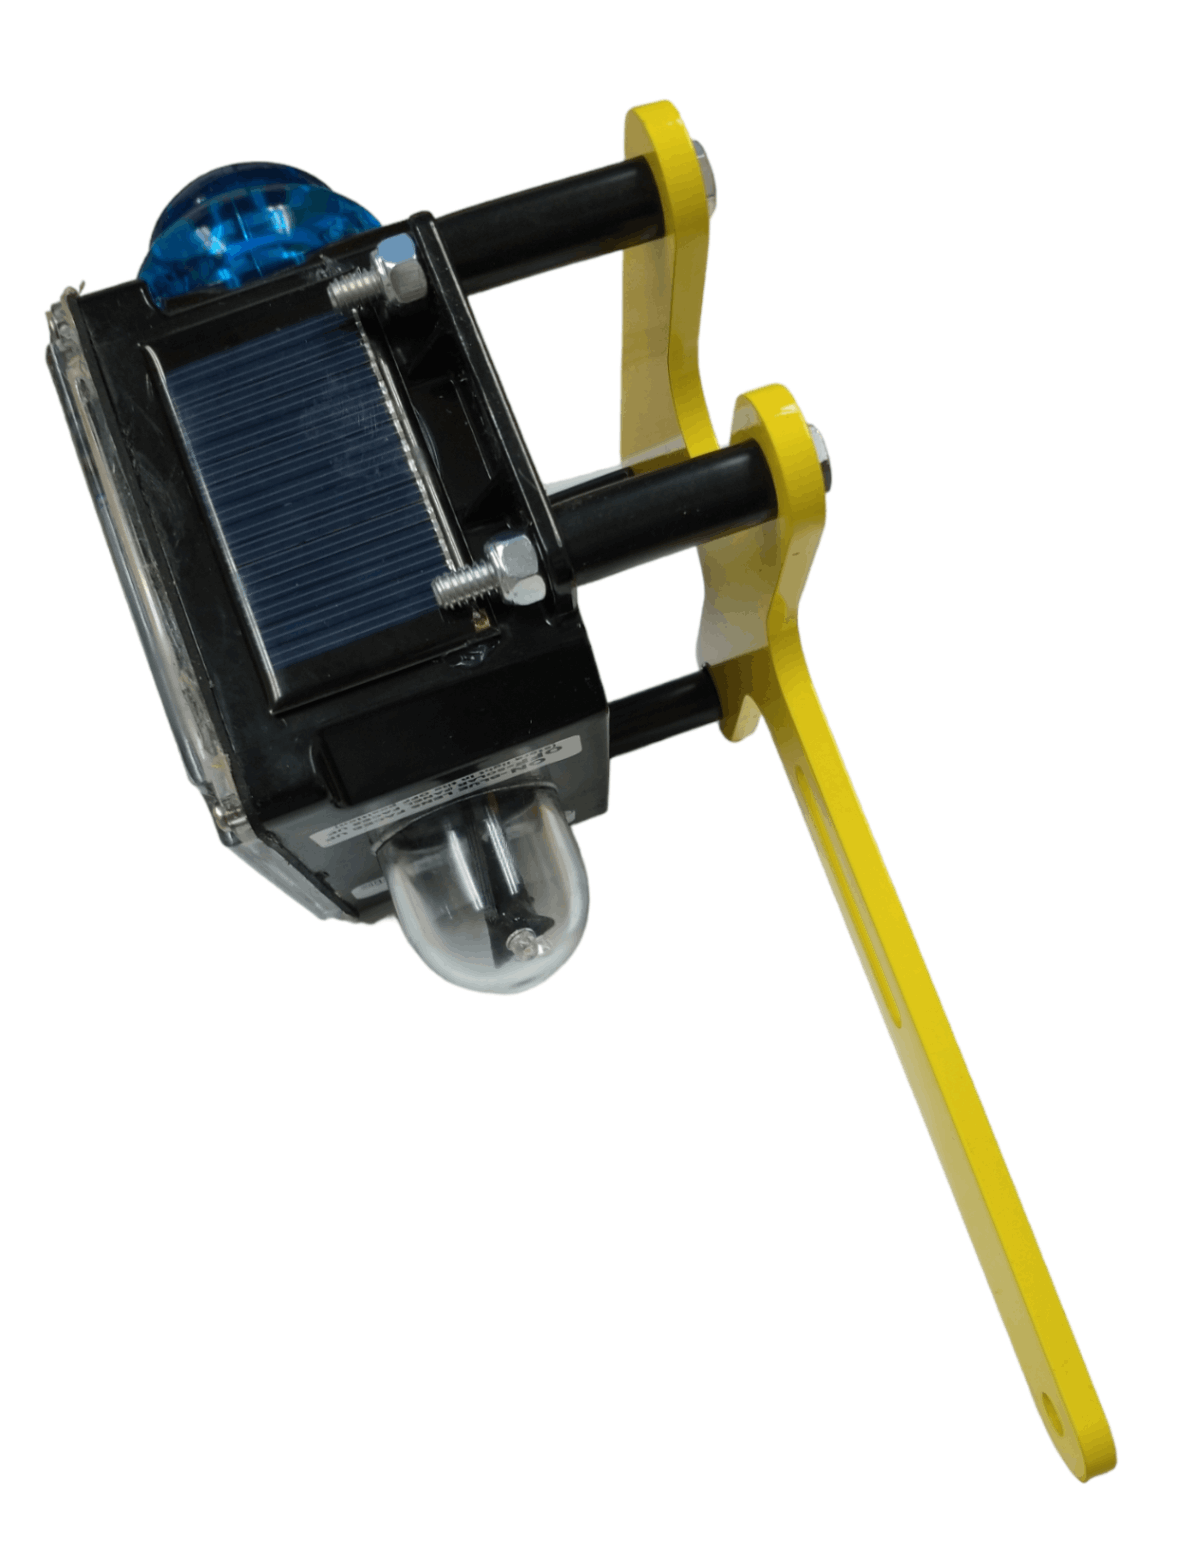 2 Focos Led Exterior 45 Watts Reflector 240cob Solar Soporte – Adkar